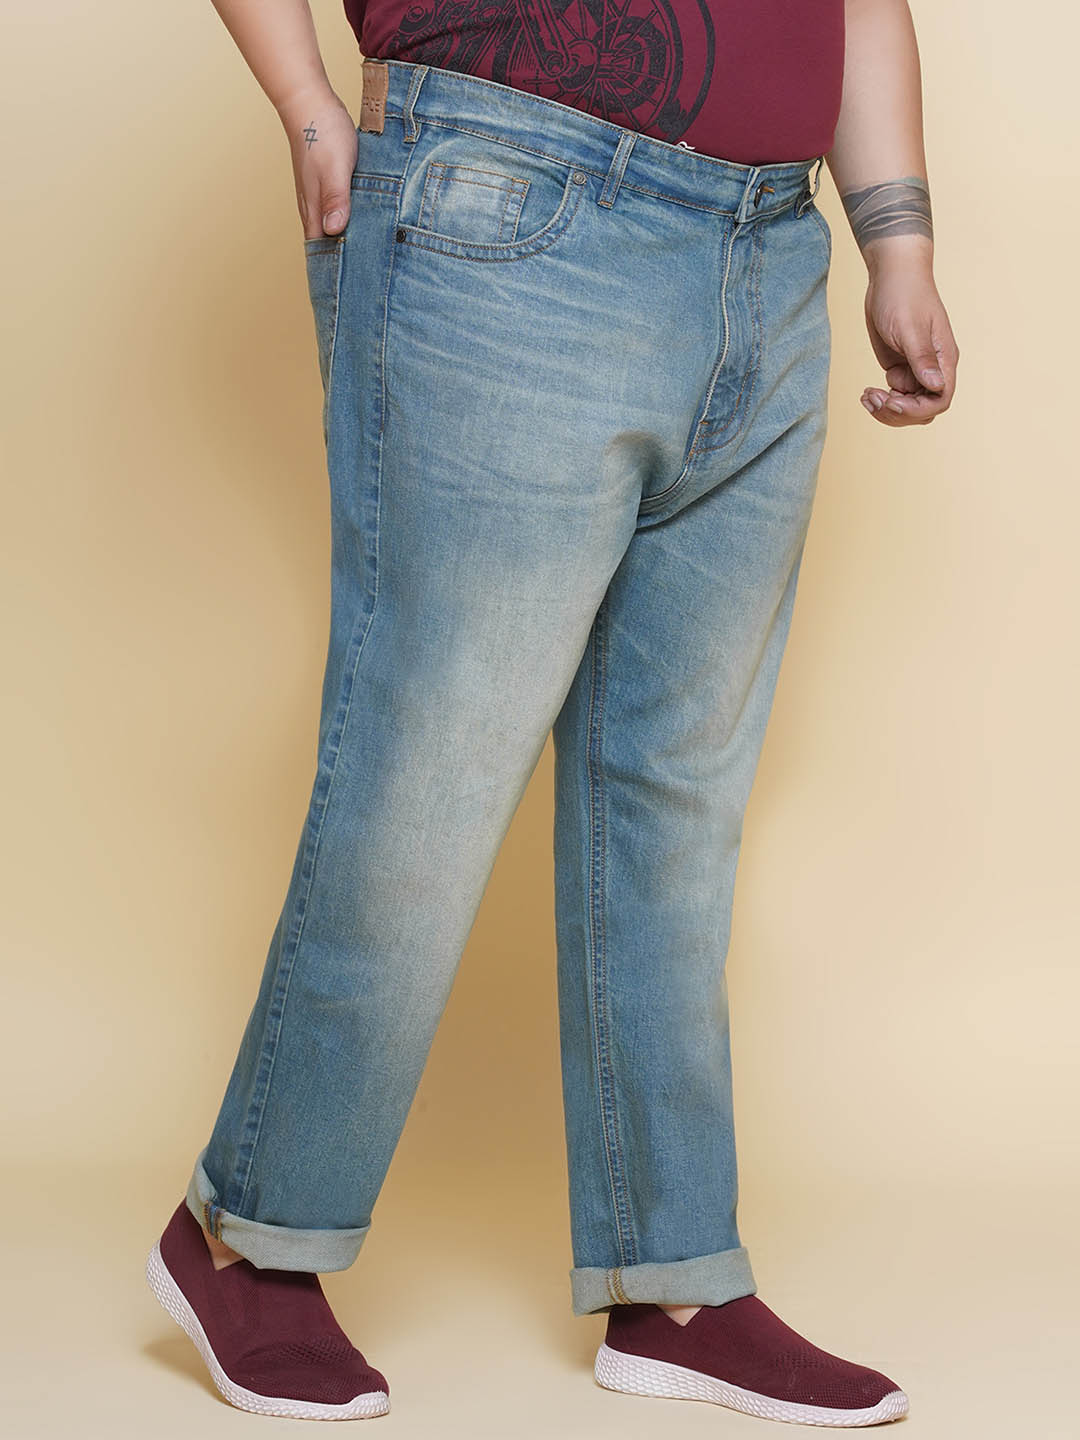 bottomwear/jeans/JPJ12391/jpj12391-3.jpg